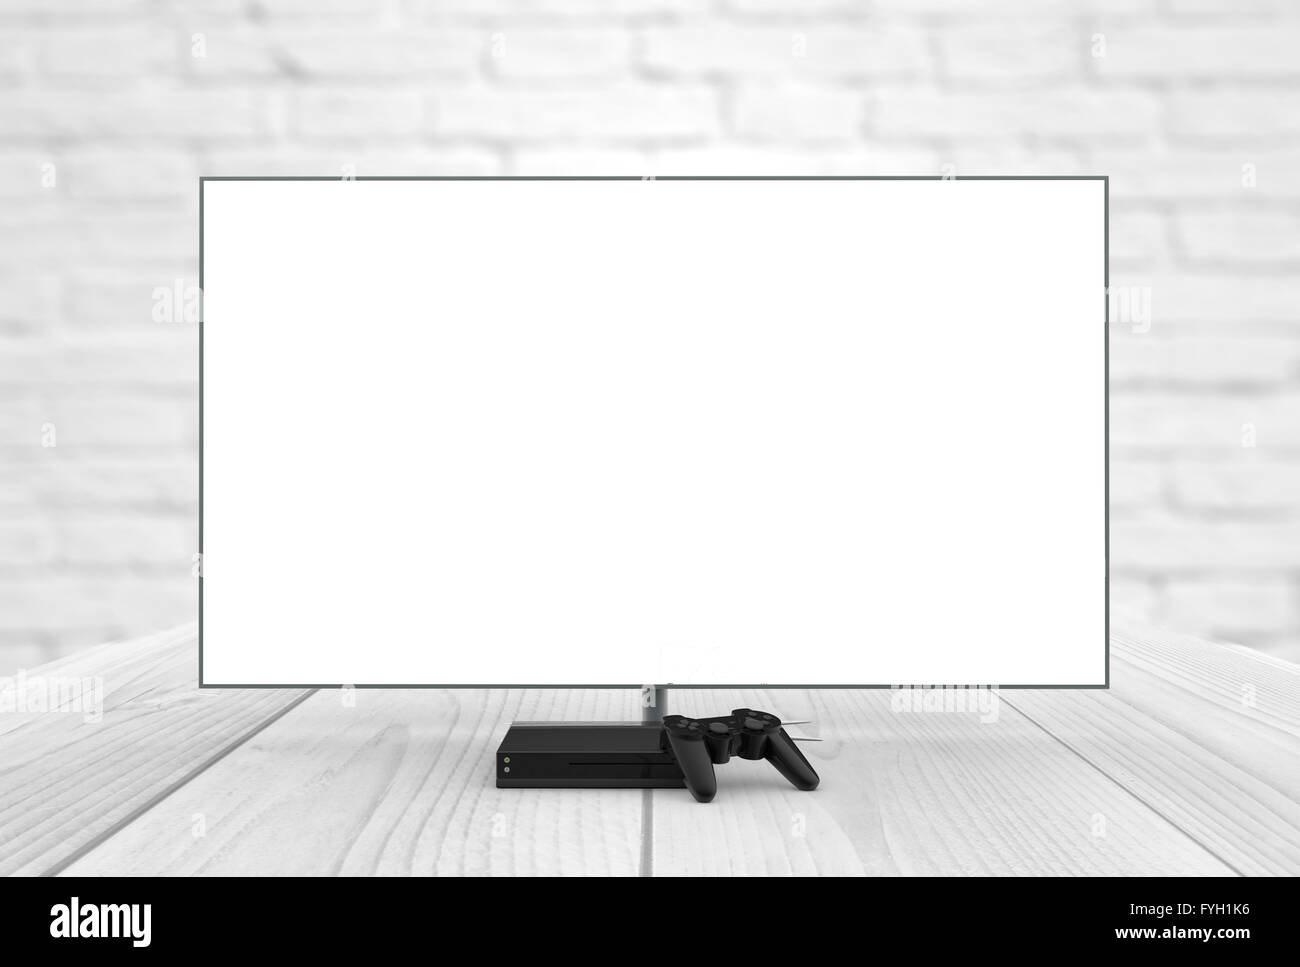 Vuoto sullo schermo della televisione con la console di gioco e gamepad generati digitalmente Foto Stock